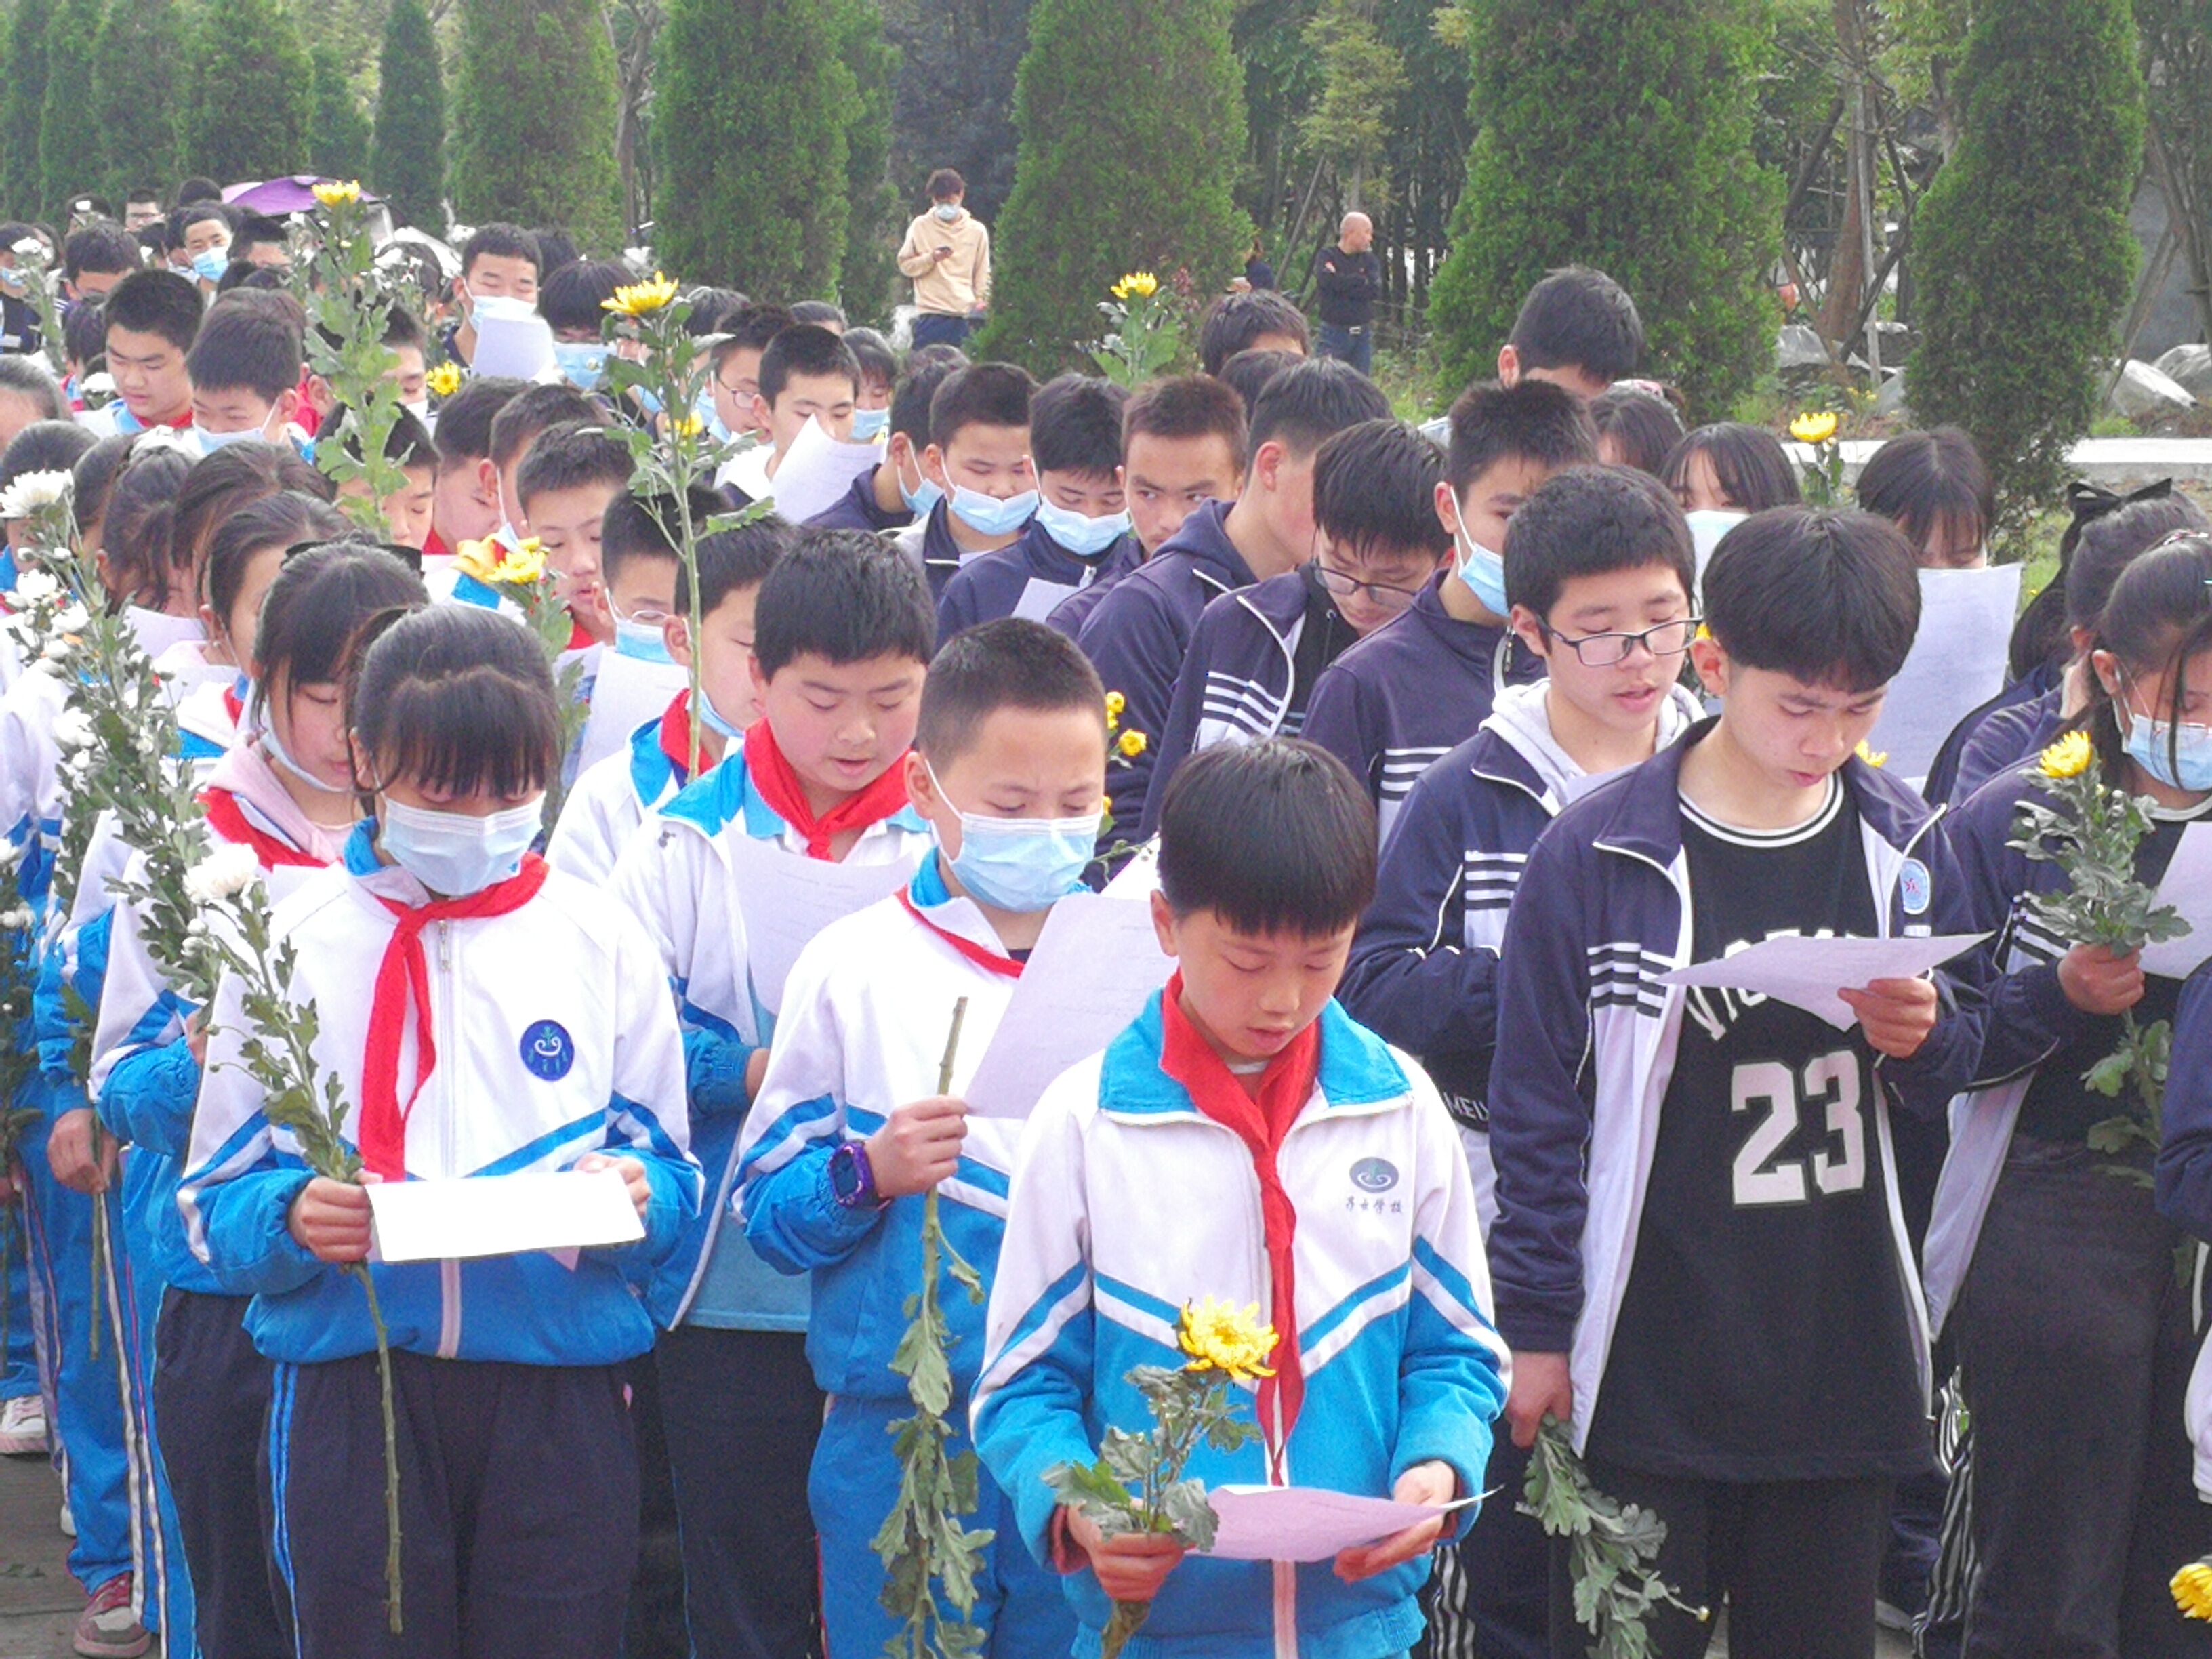 四川历史文化名人西道孔子逝世2003周年扬雄故里举行春祭大典